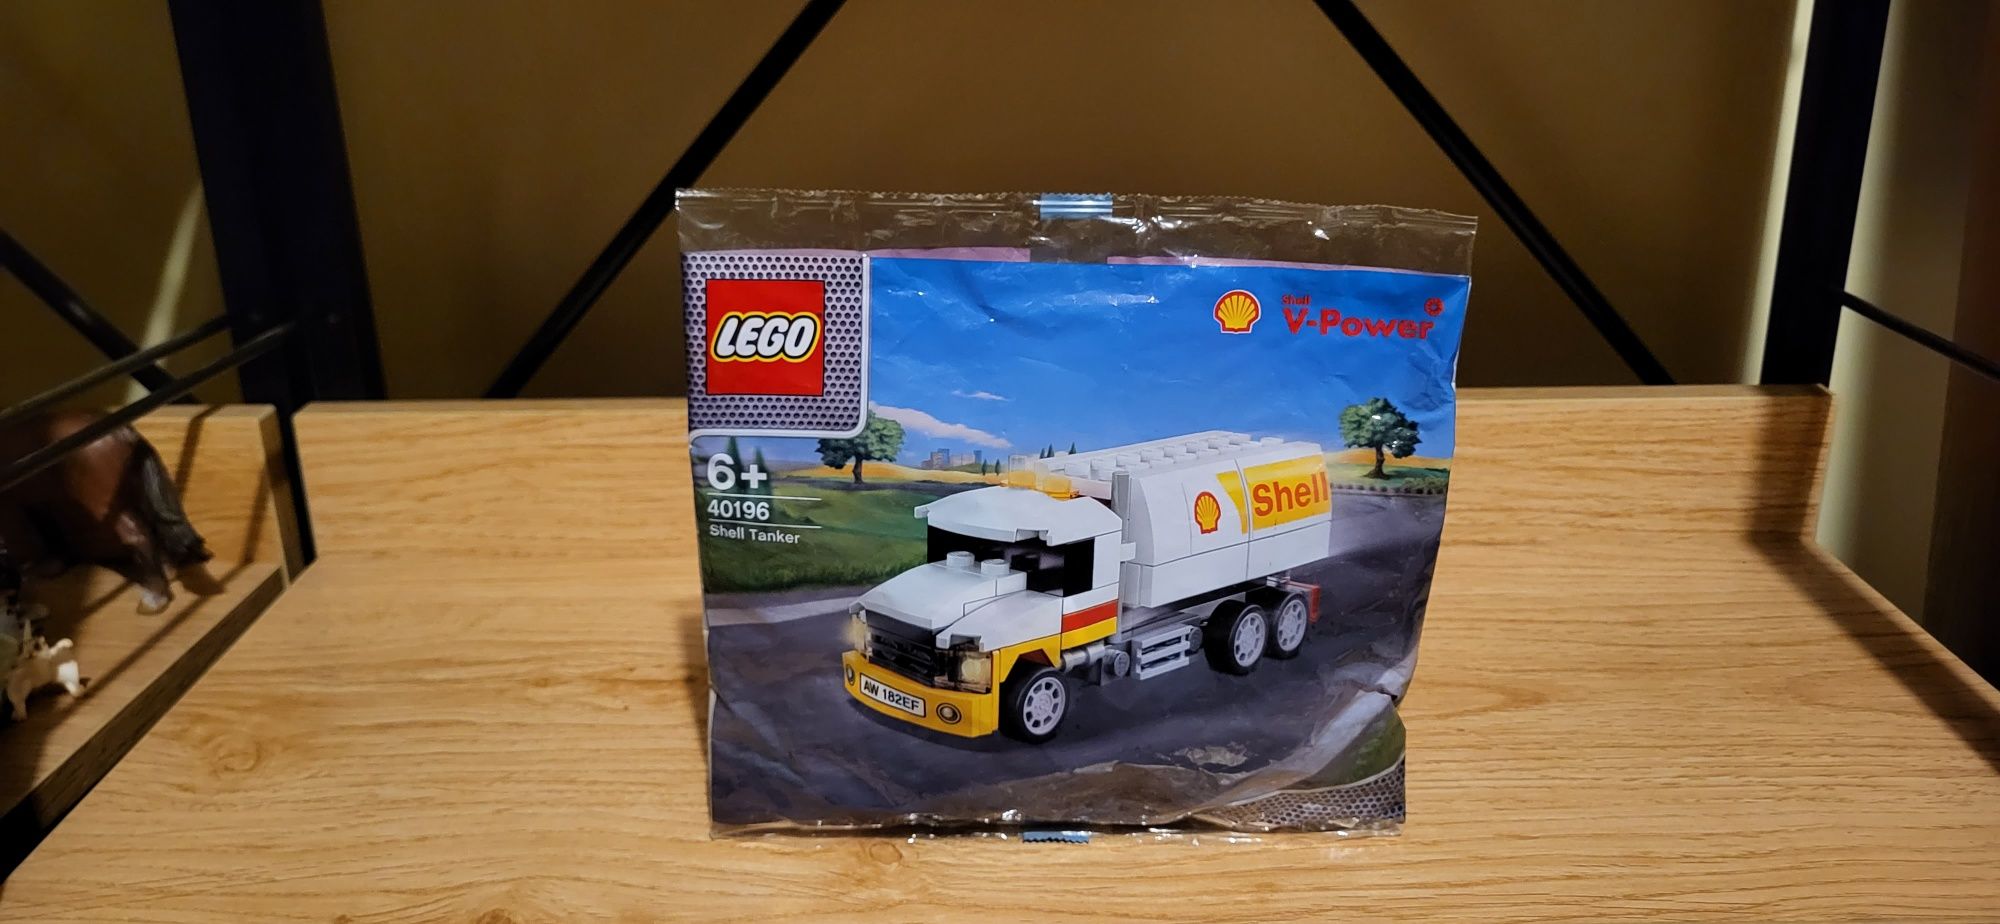 Lego Shell 40196 Shell Tanker saszetka z klockami